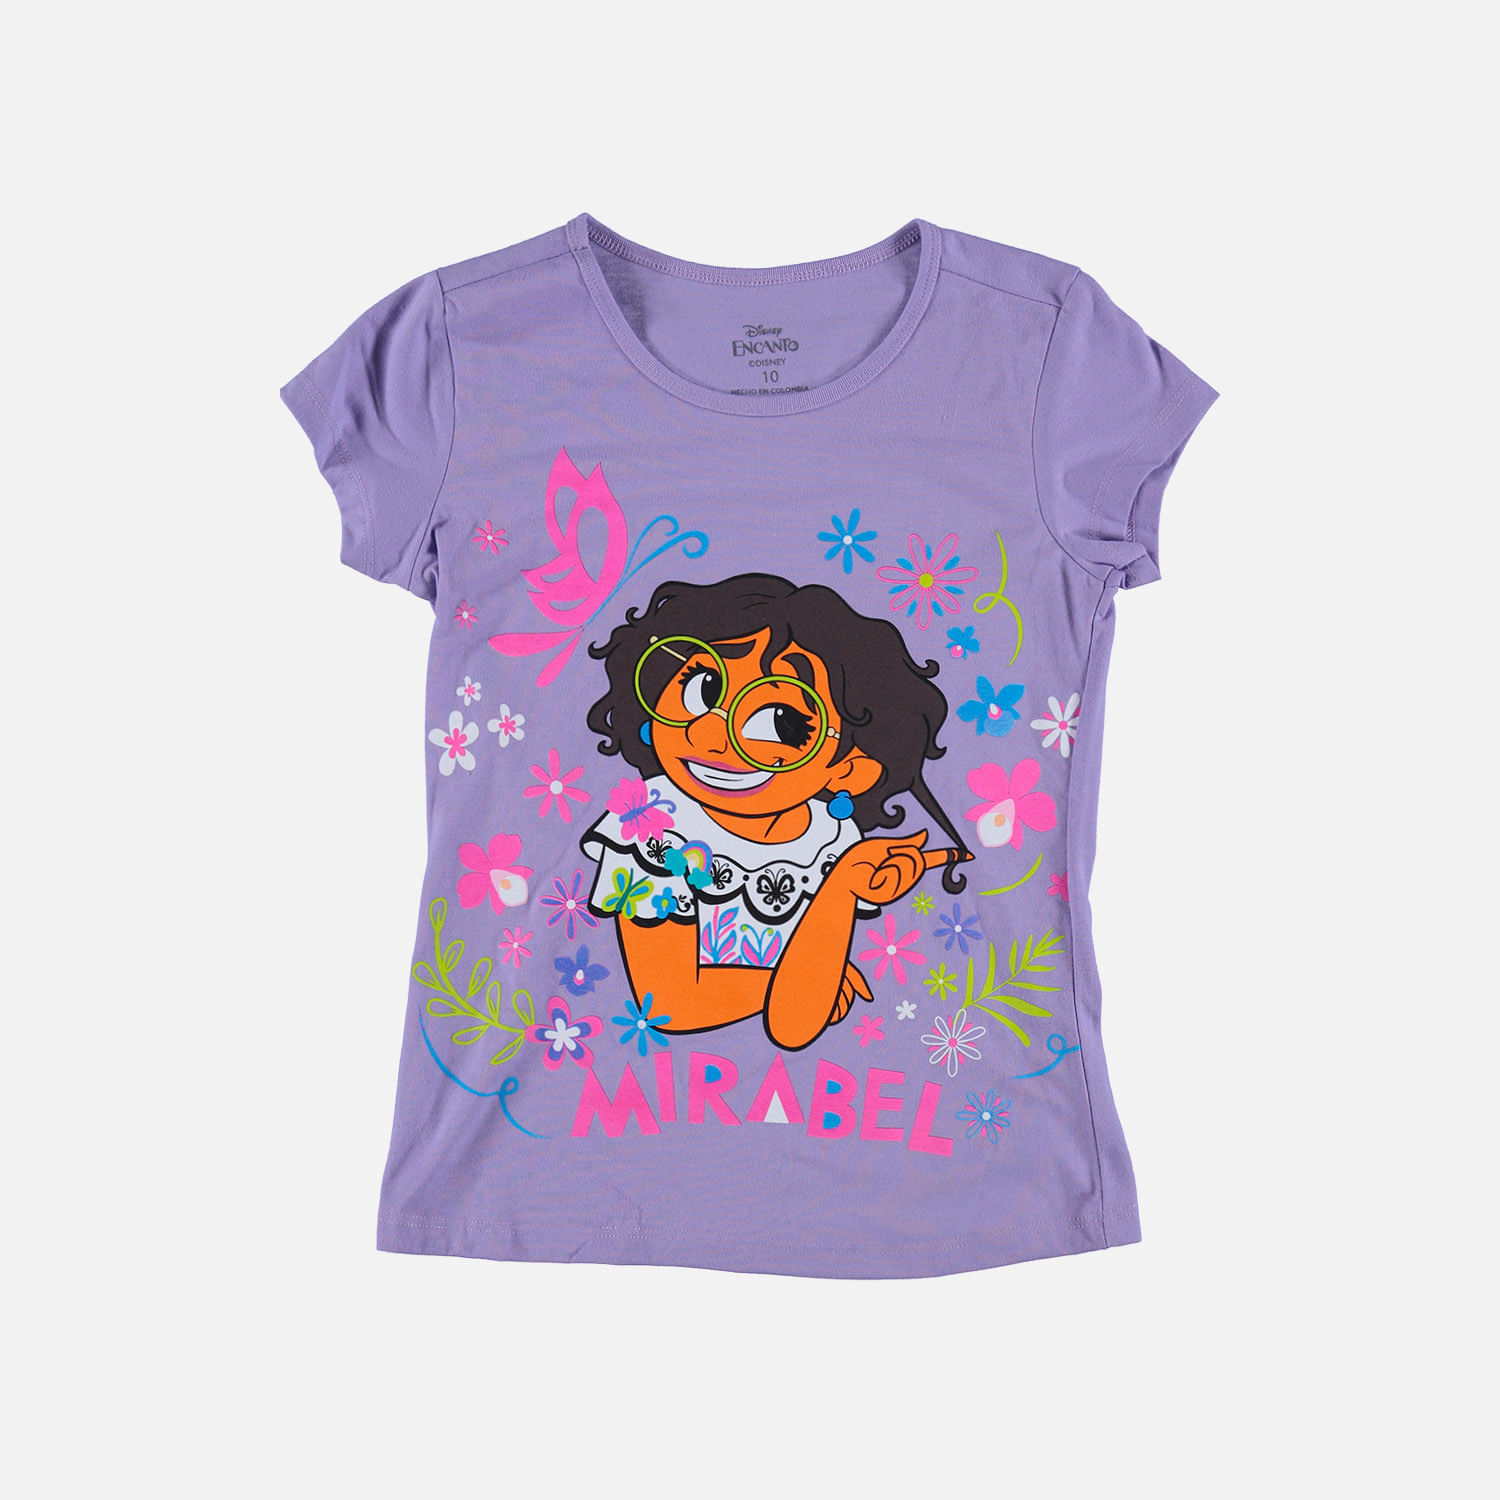 Camiseta de niña,manga corta lila de Encanto Disney